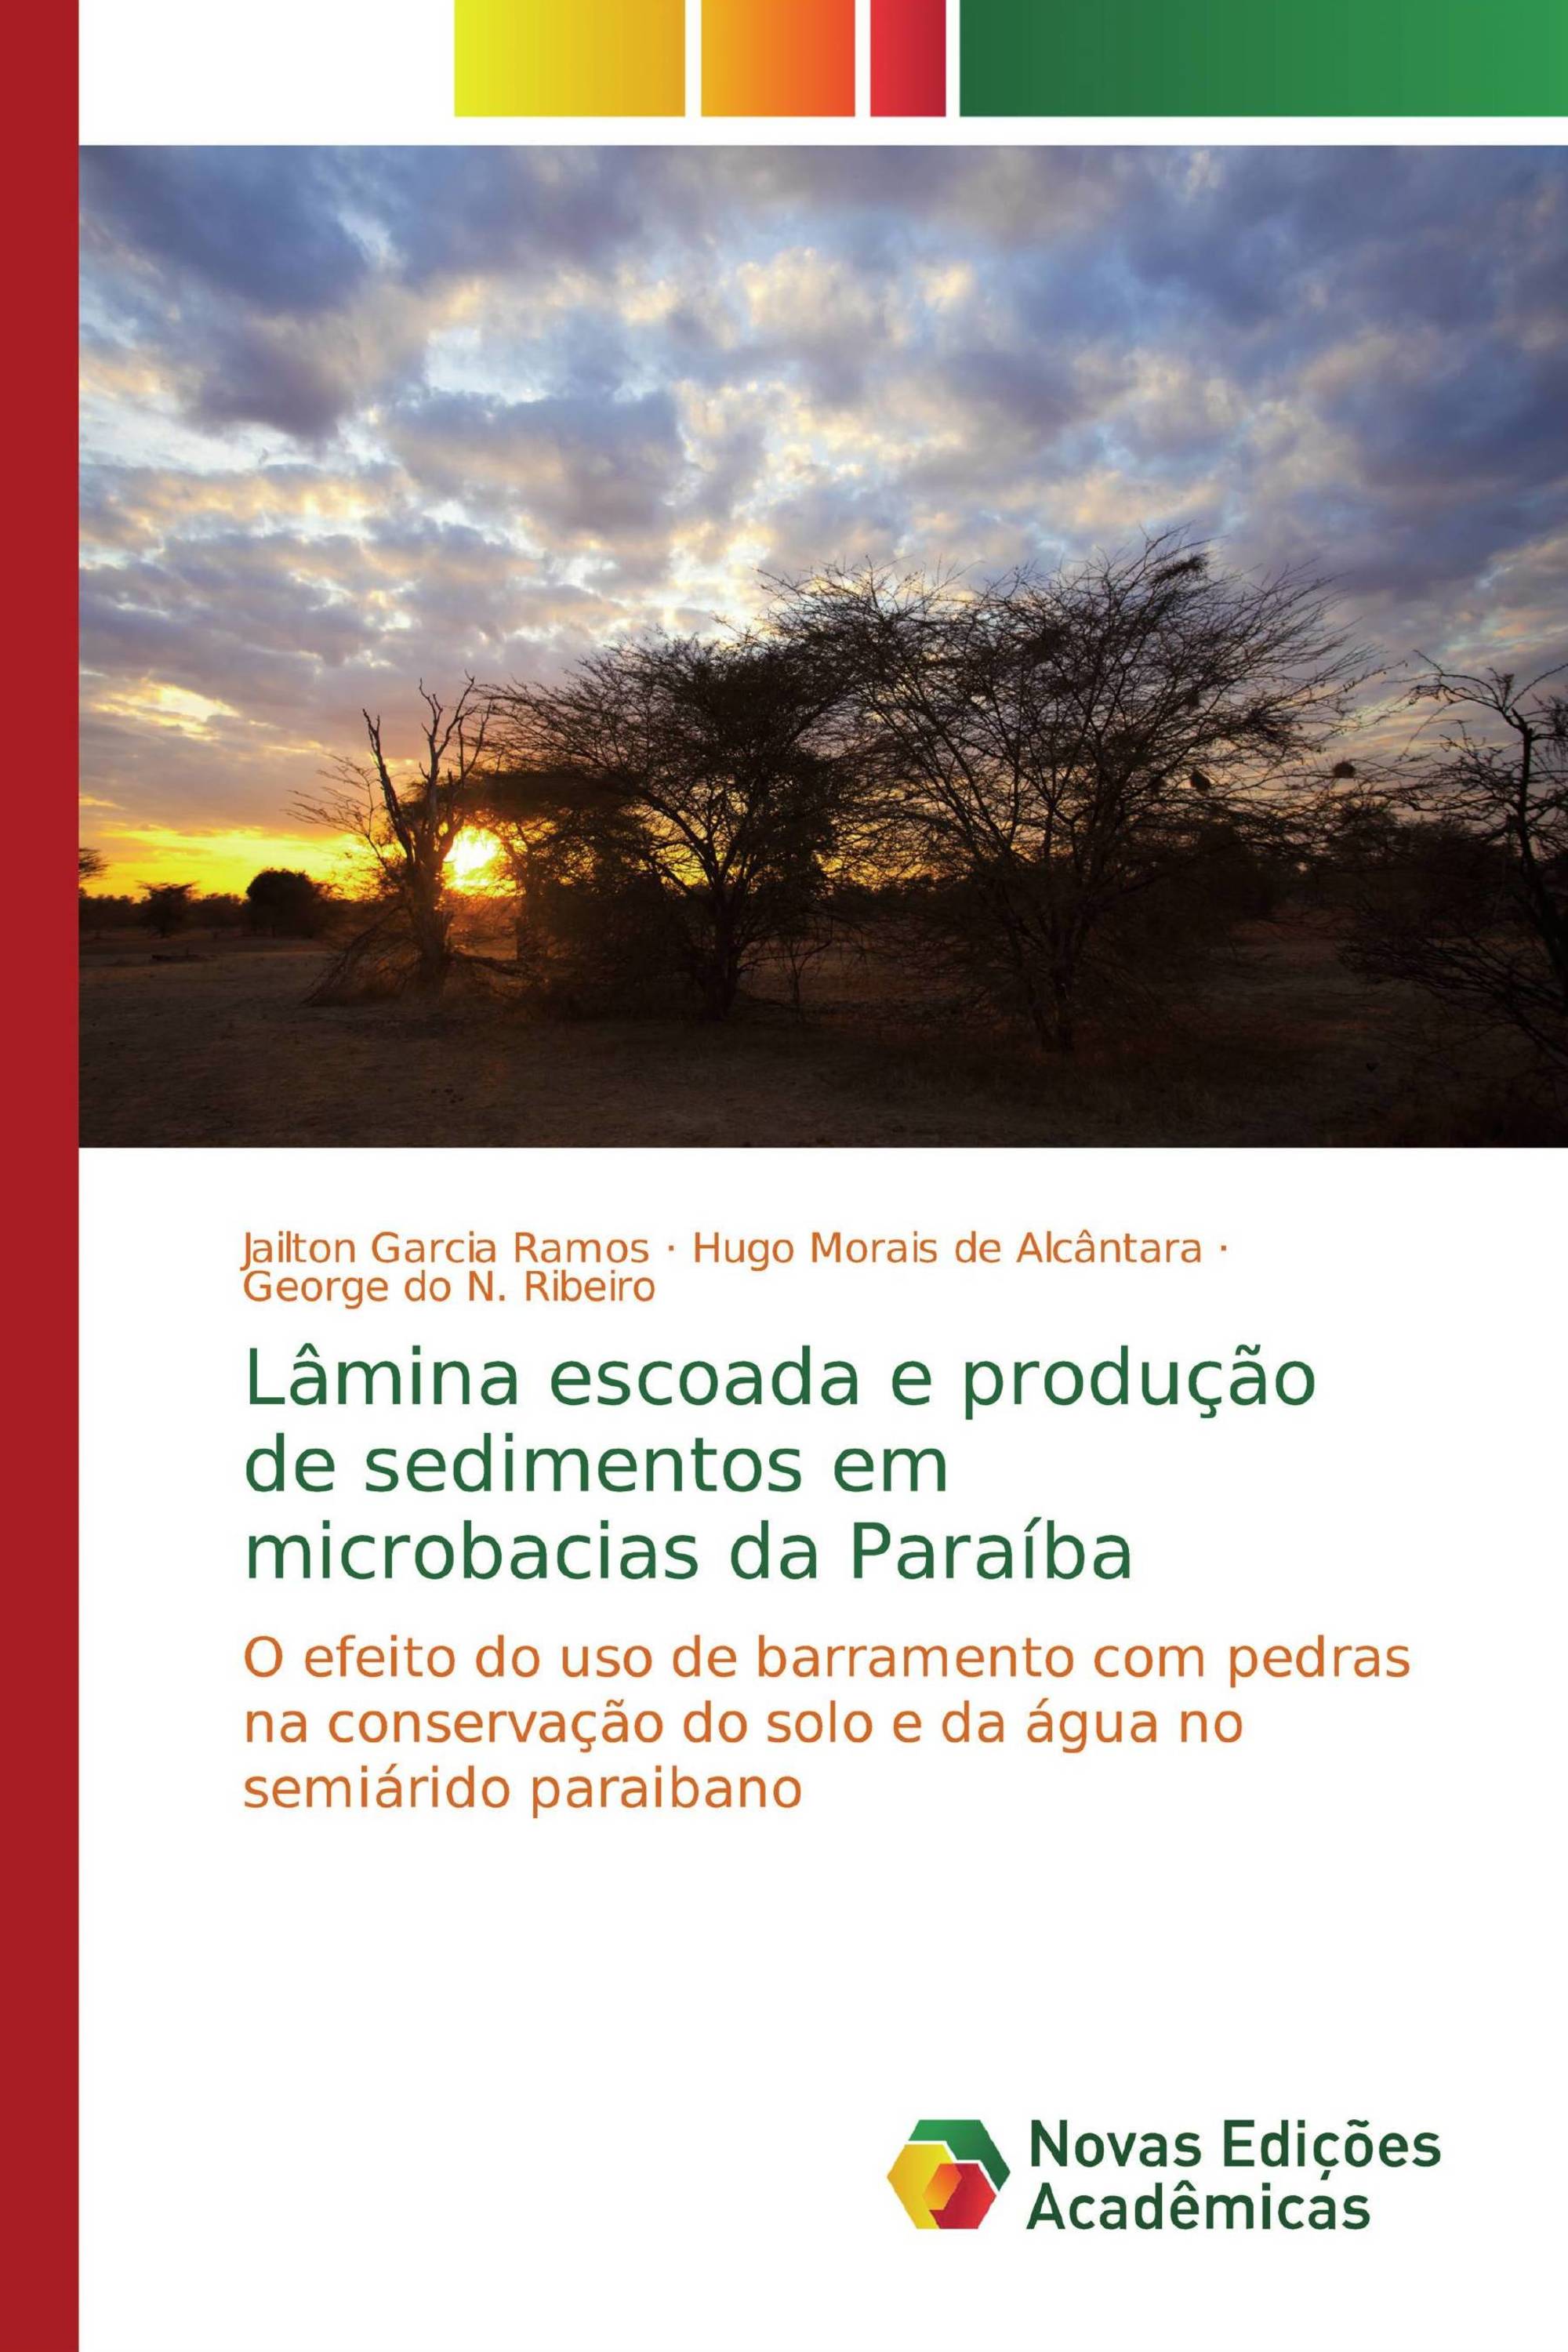 Lâmina escoada e produção de sedimentos em microbacias da Paraíba